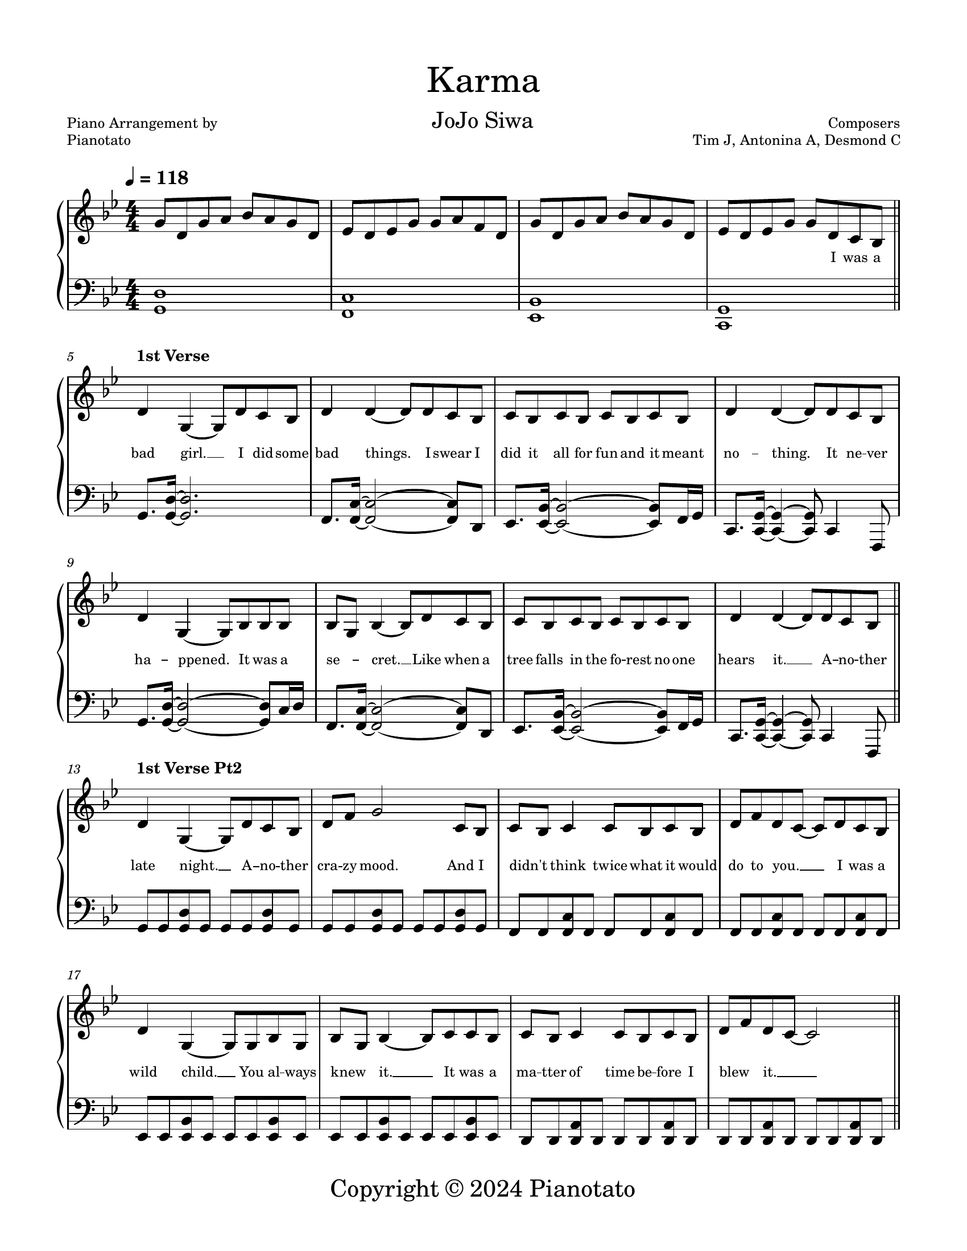 JoJo Siwa - Karma by Pianotato